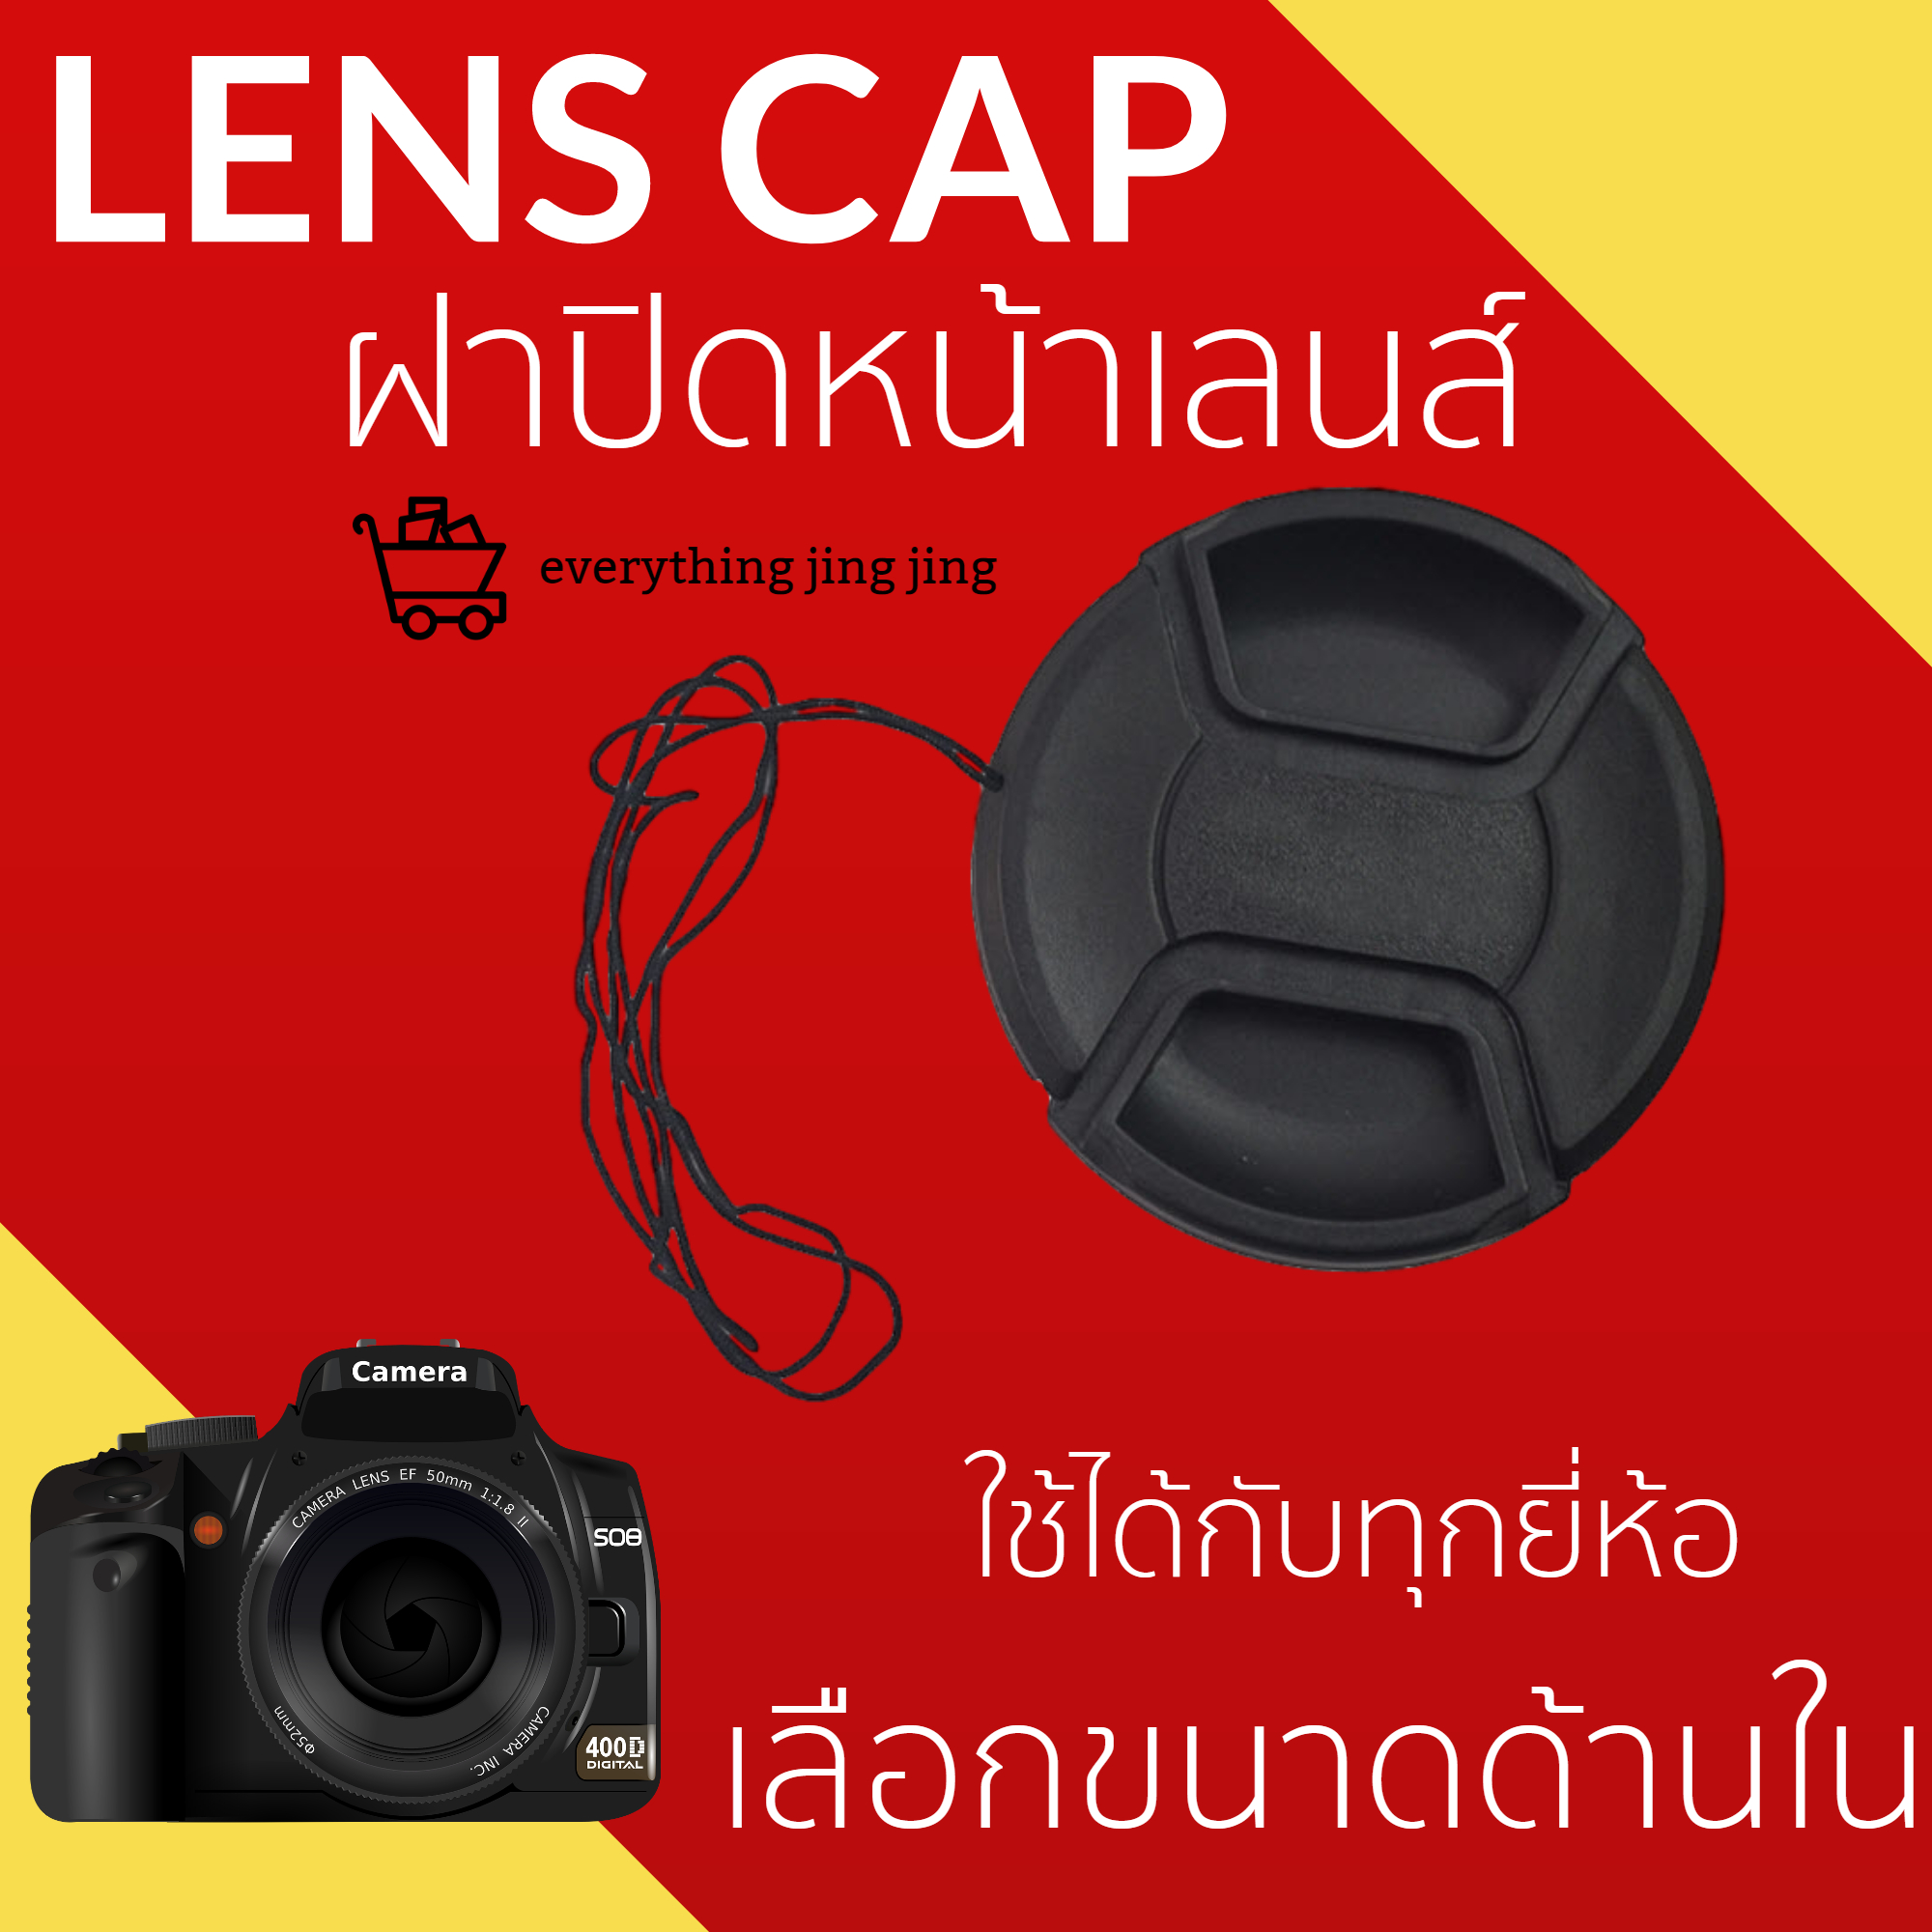 ฝาปิดหน้าเลนส์ ฝาปิดเลนส์ ฝาปิดกล้อง ฝาปิด Canon Nikon Sony Fuji Olympus